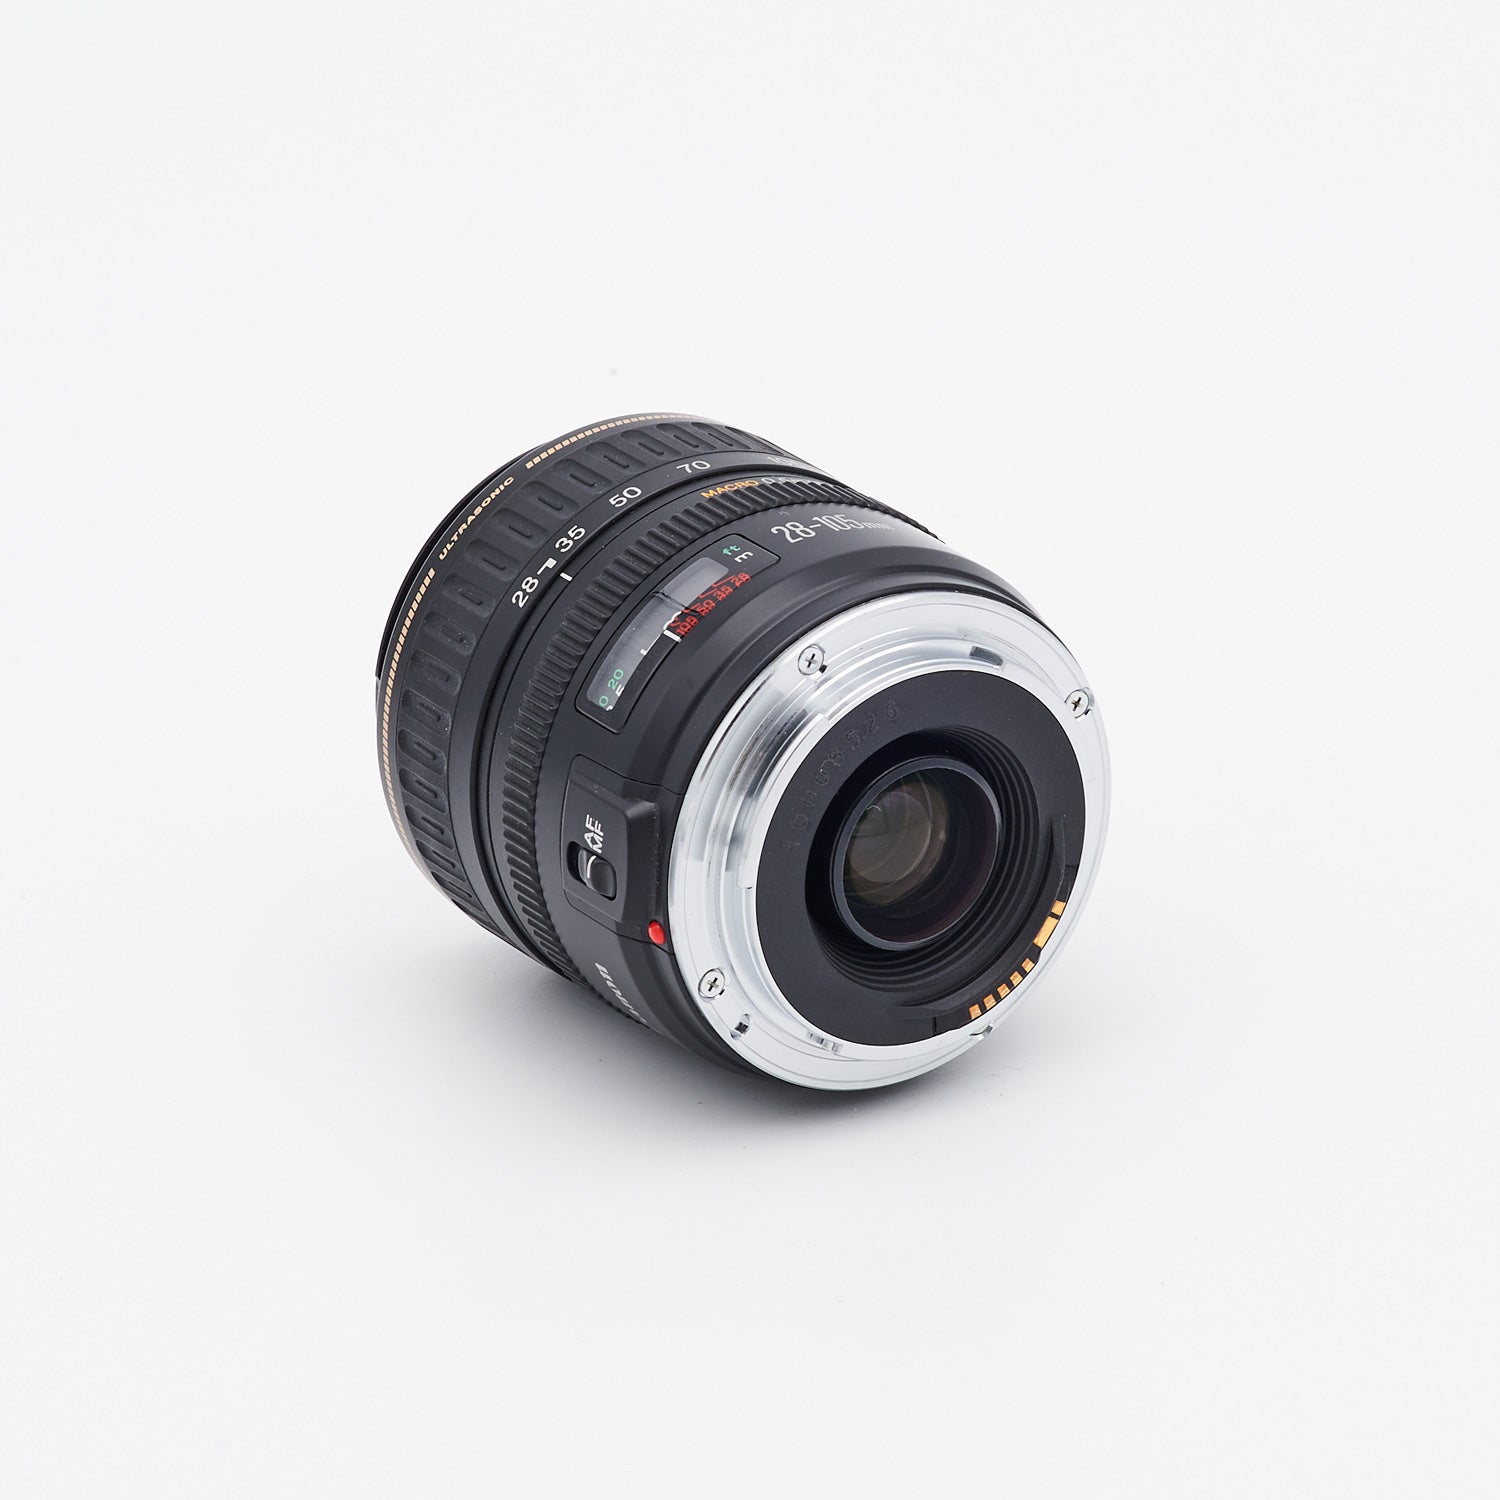 Canon Zoom Lens EF 3.5-4.5/28-105mm USM (S/N 10008526)